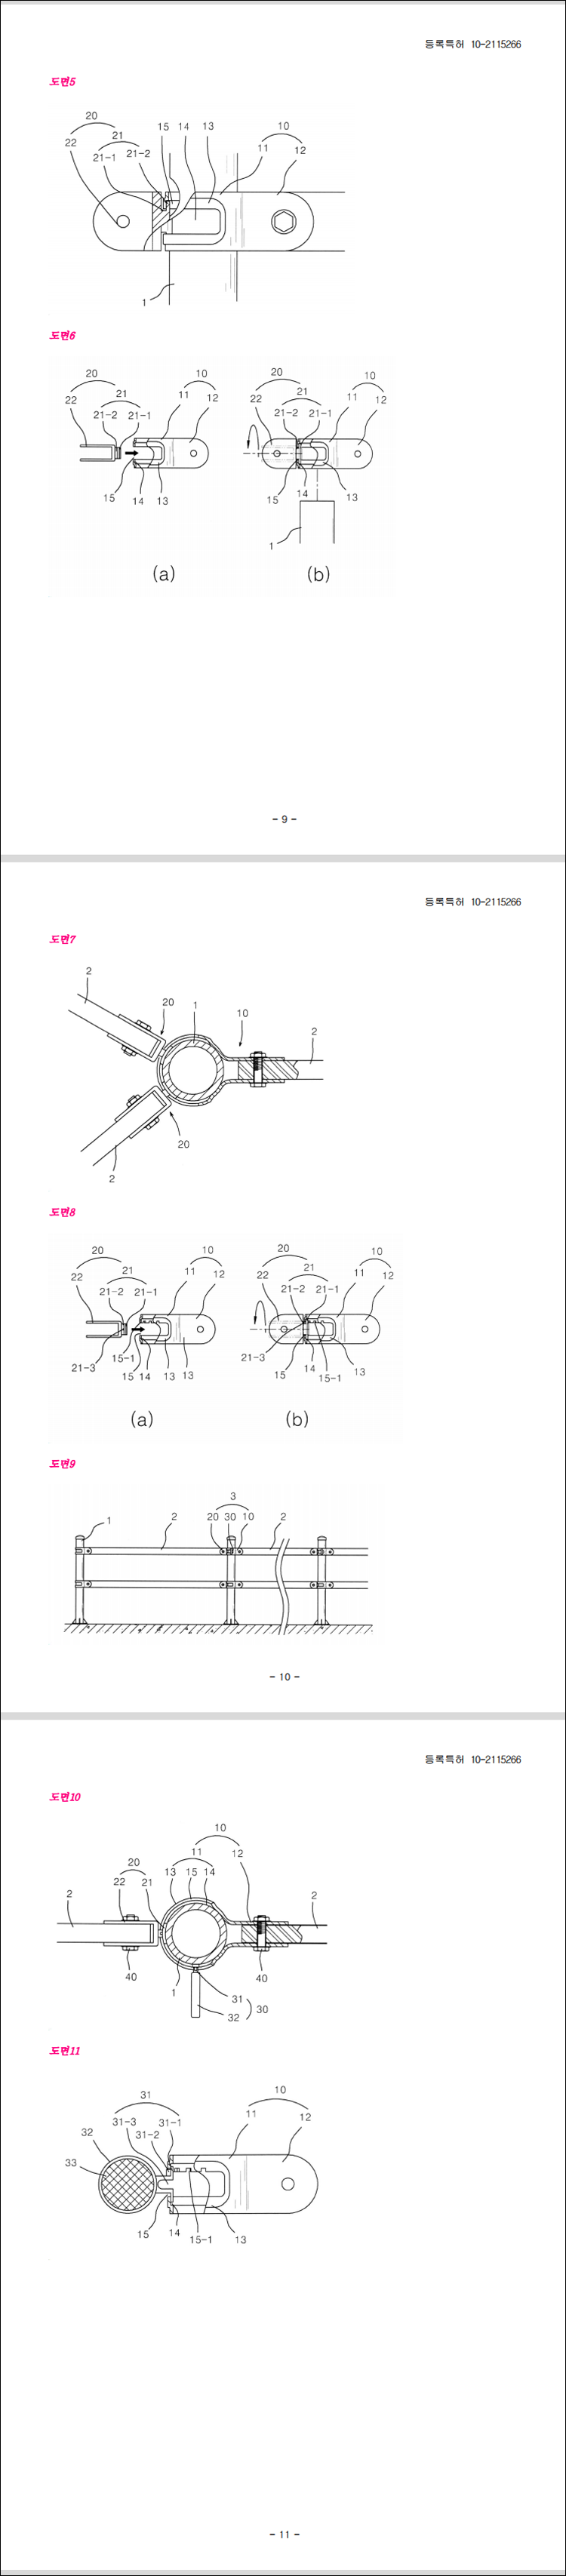 특허 제10-2115266호(휀스용 연결구 및 이를 이용한 휀스, 장초아)